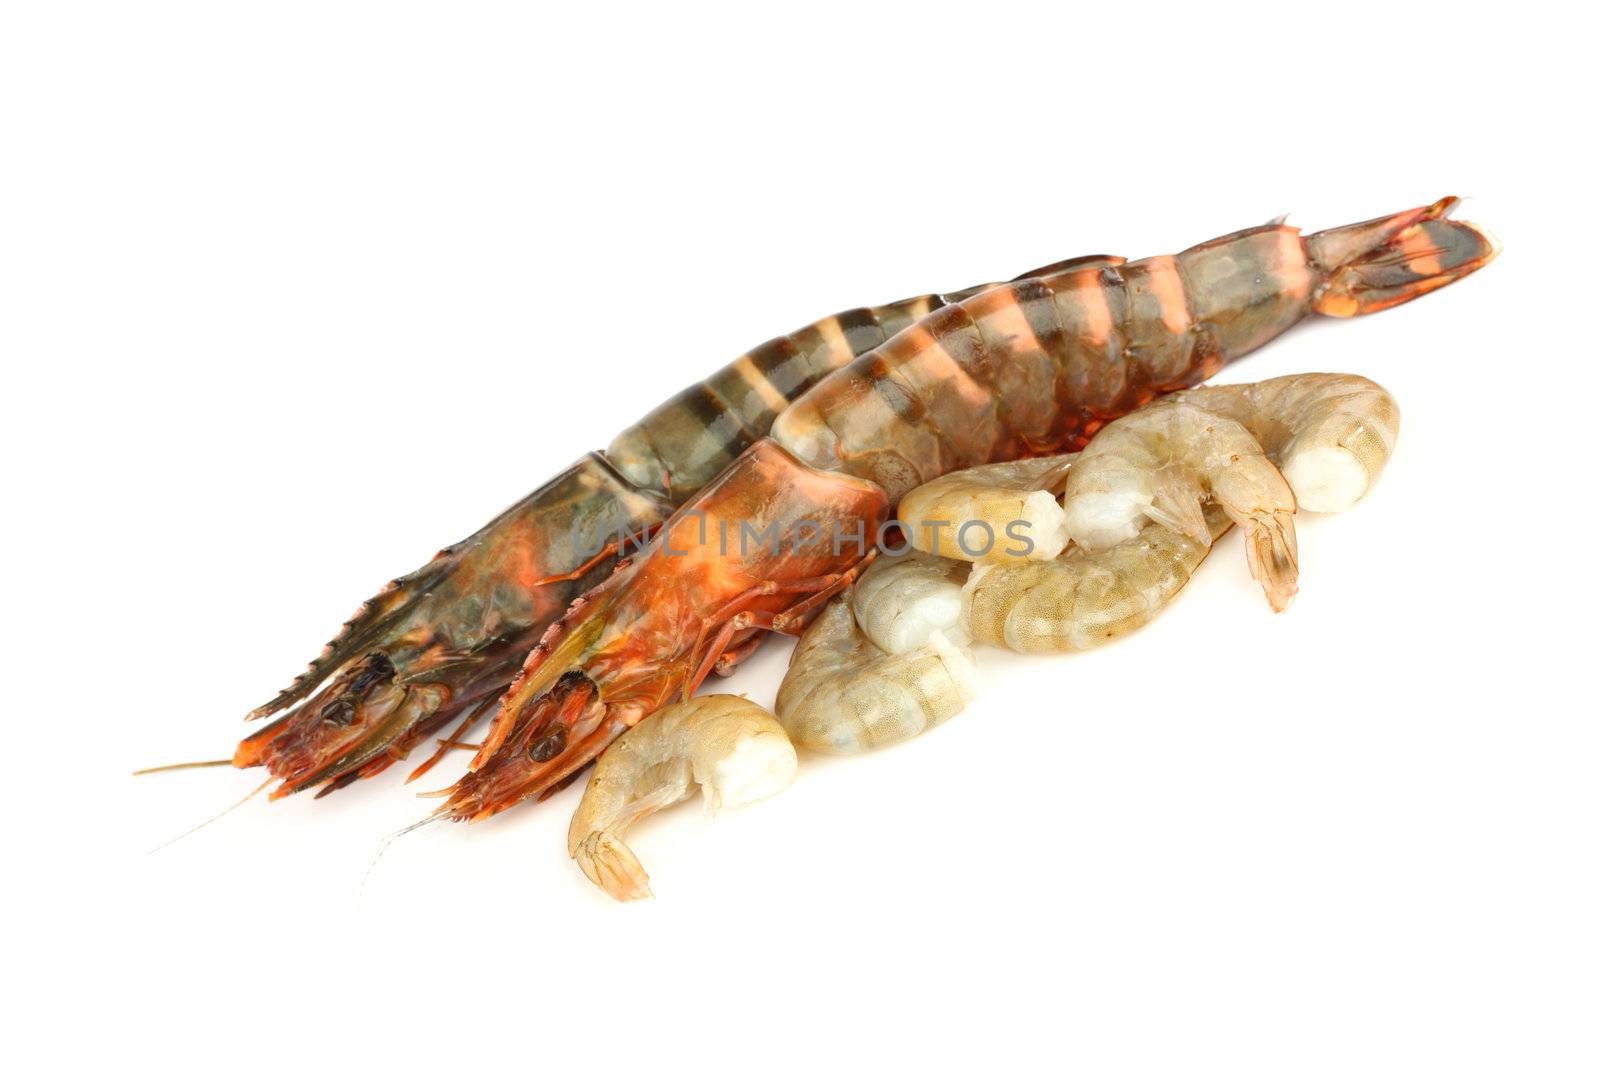 fresh shrimps isolated on white